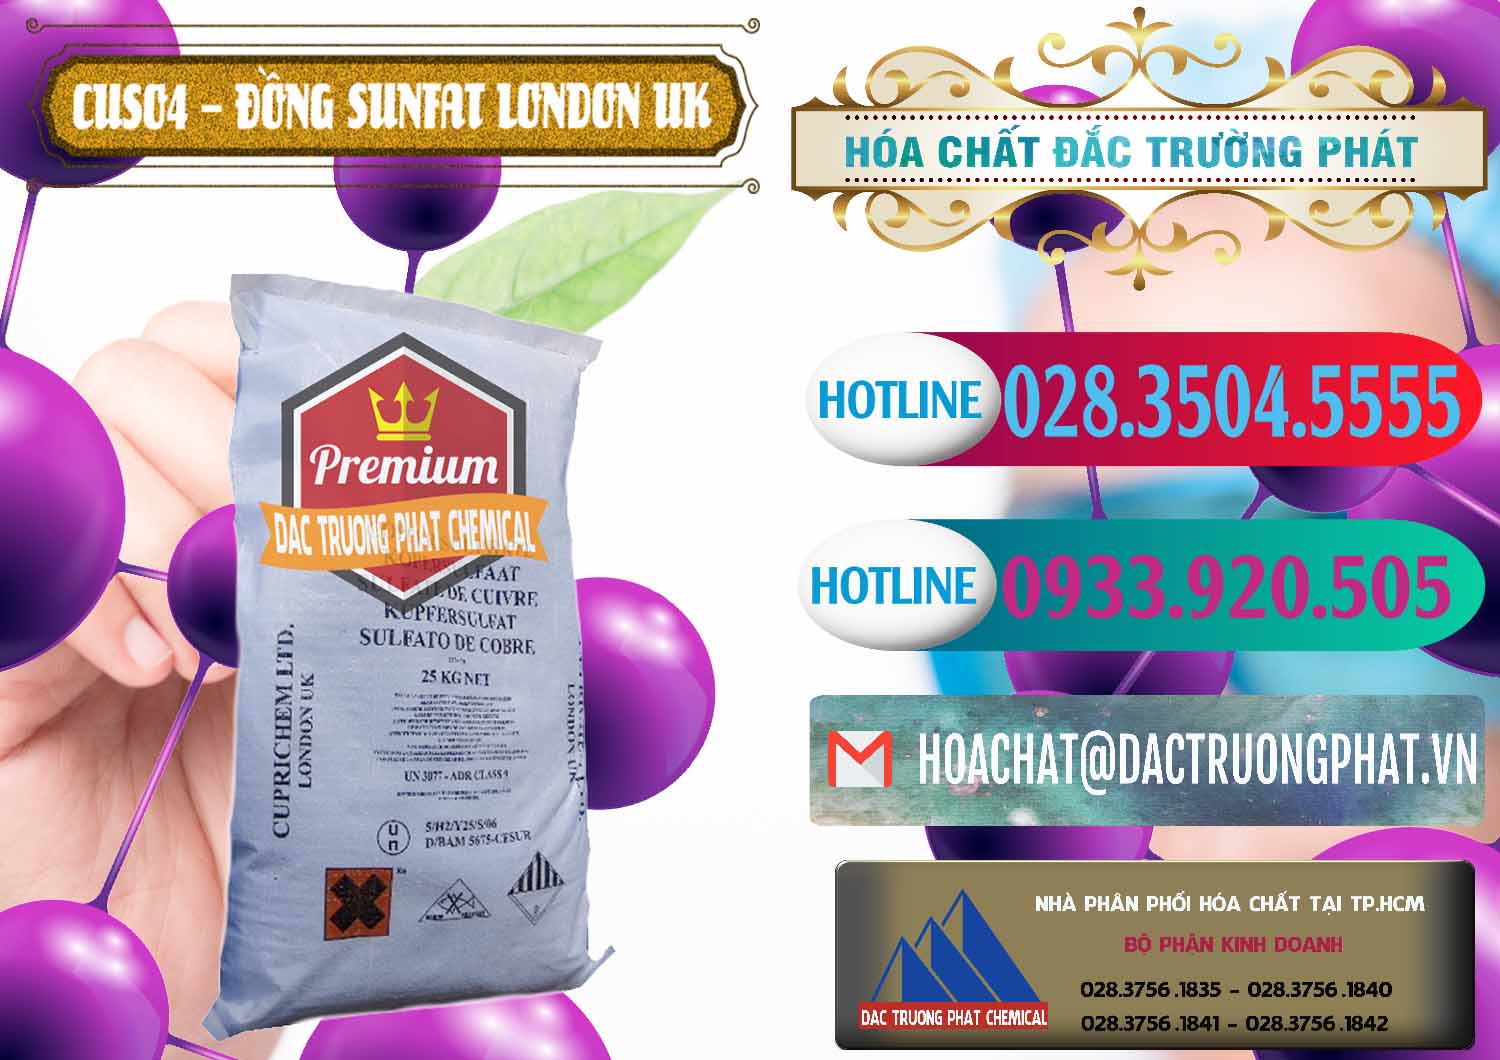 Đơn vị chuyên cung ứng ( bán ) CuSO4 – Đồng Sunfat Anh Uk Kingdoms - 0478 - Đơn vị chuyên cung cấp ( nhập khẩu ) hóa chất tại TP.HCM - truongphat.vn